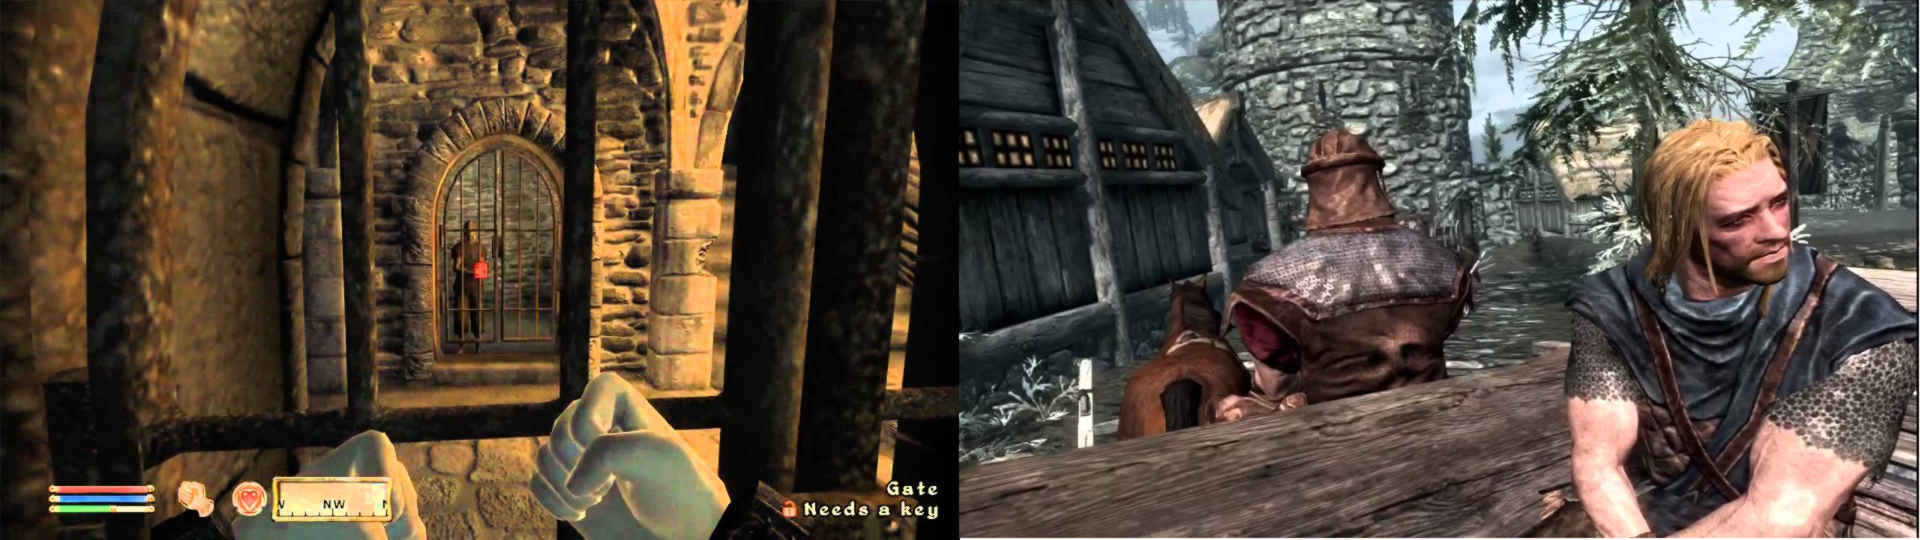 Prison levels from Elder Scrolls